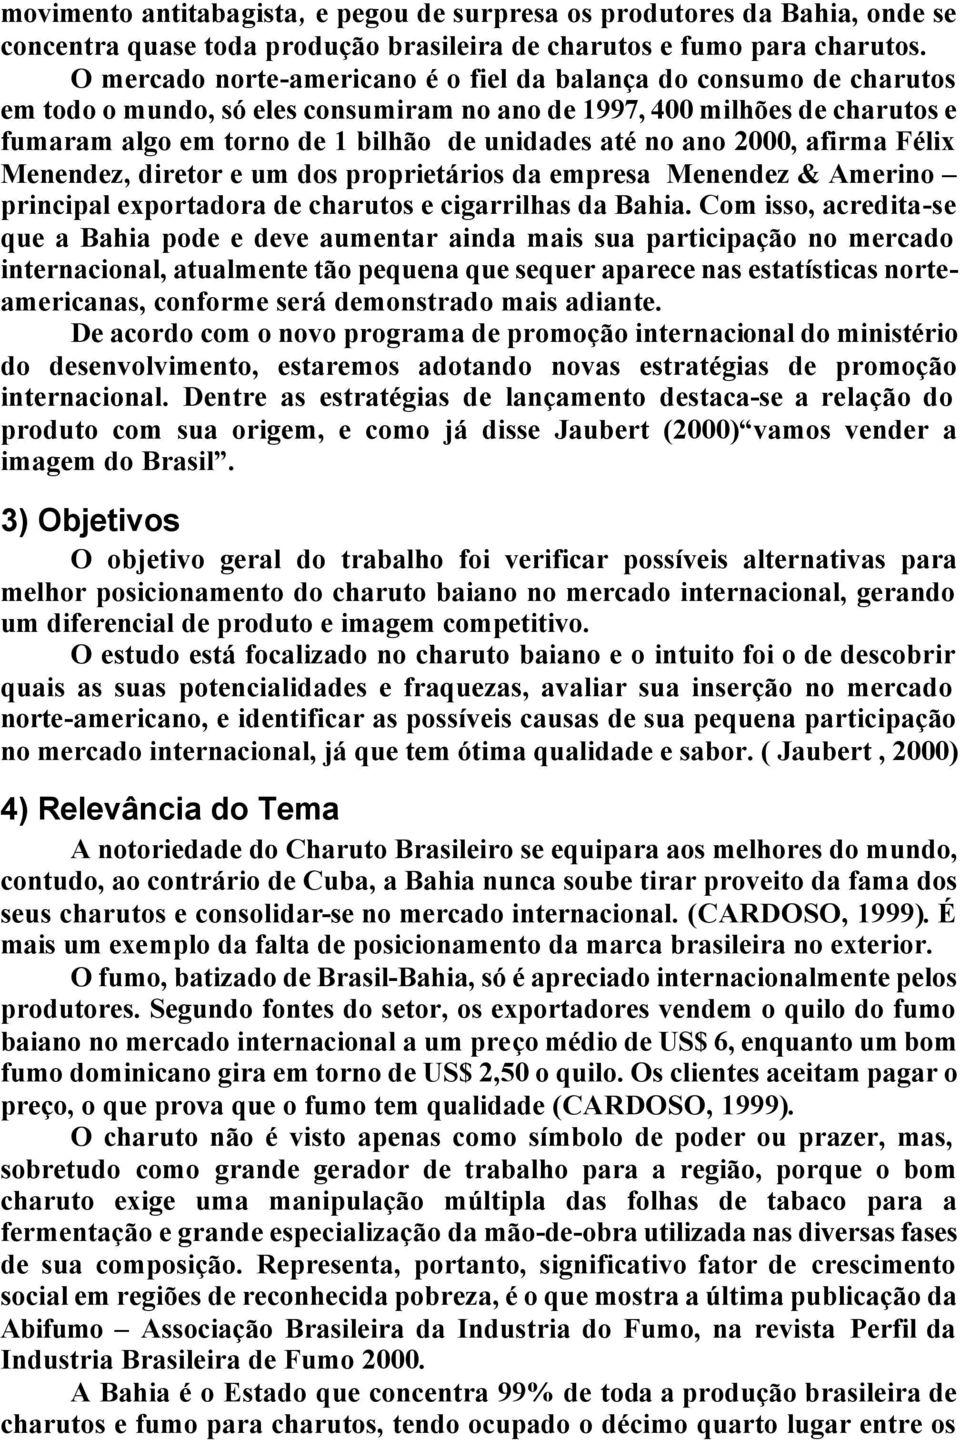 ano 2000, afirma Félix Menendez, diretor e um dos proprietários da empresa Menendez & Amerino principal exportadora de charutos e cigarrilhas da Bahia.